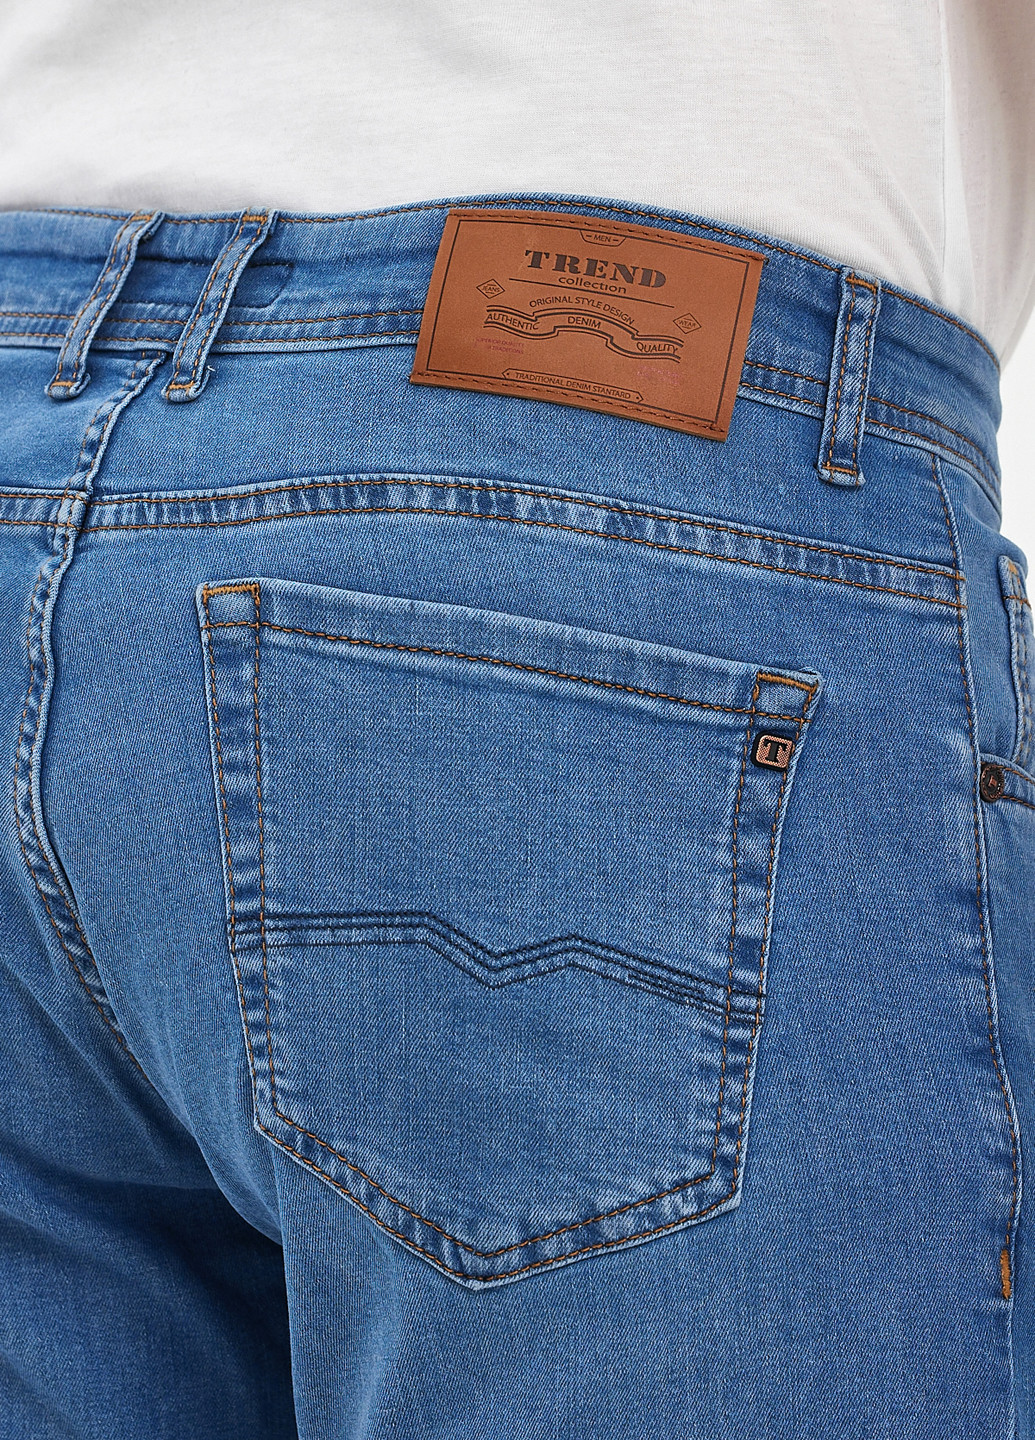 Светло-синие демисезонные регюлар фит джинсы Trend Collection